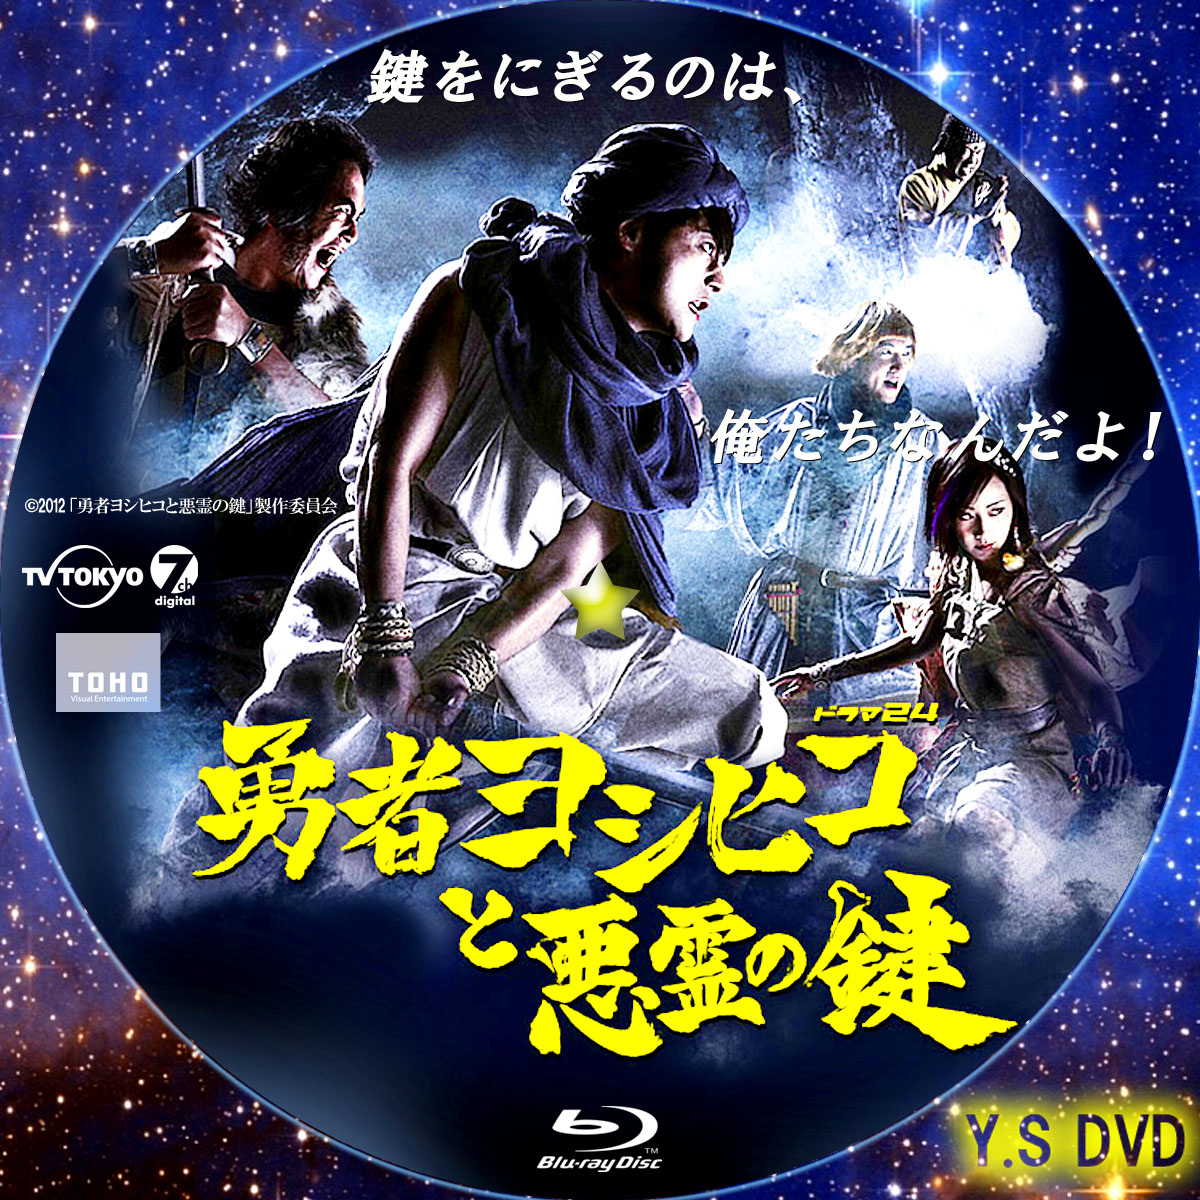 勇者ヨシヒコと悪霊の鍵 DVD レンタル版特典